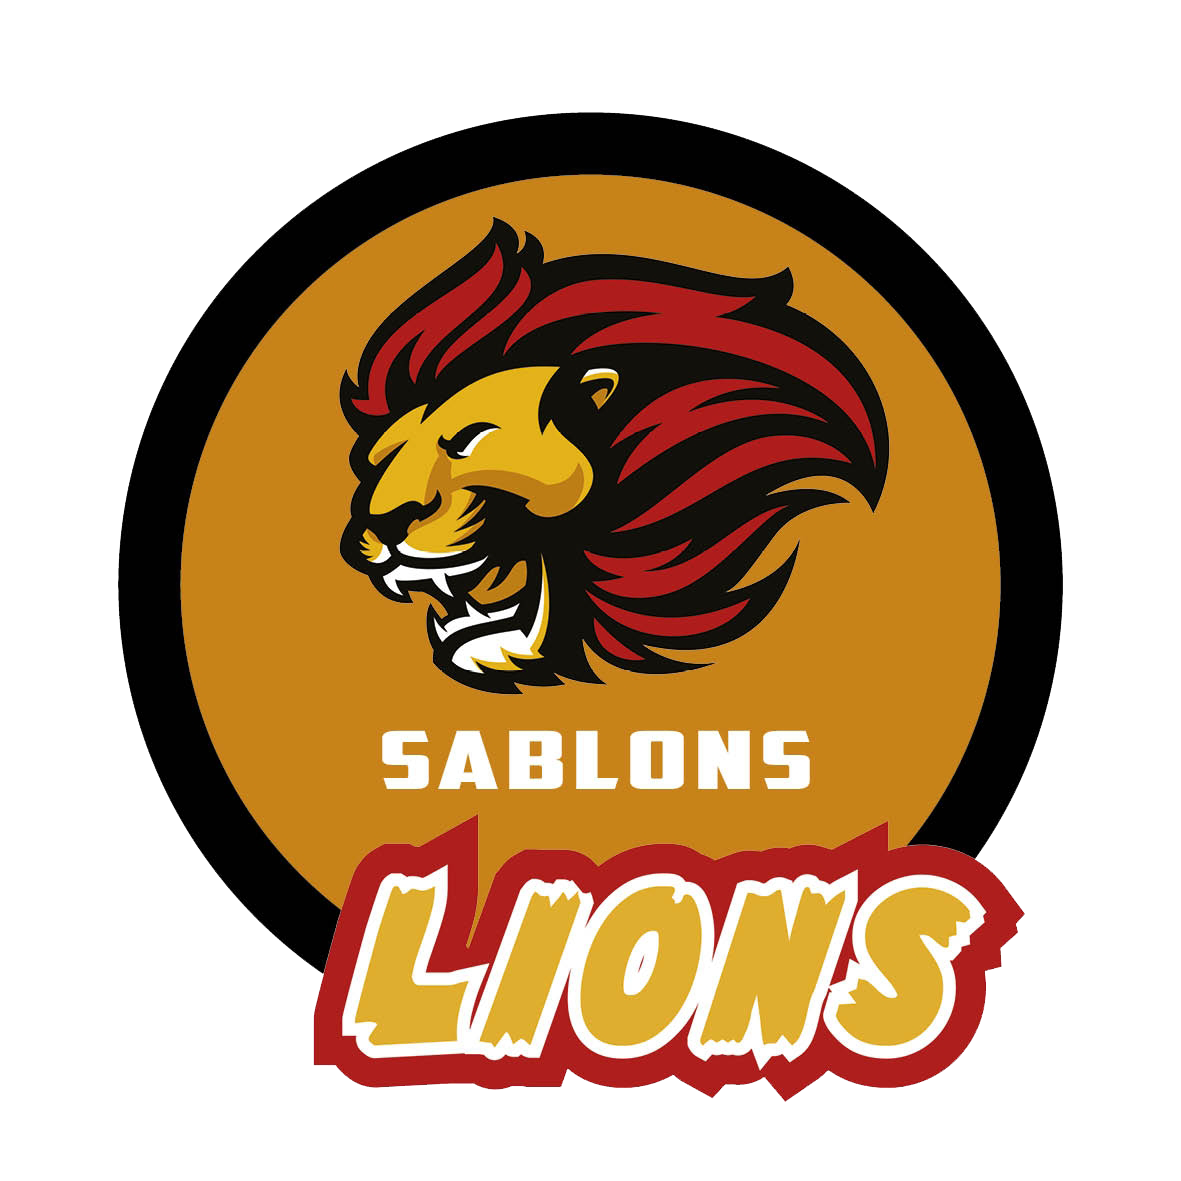 Lions (Sablons)